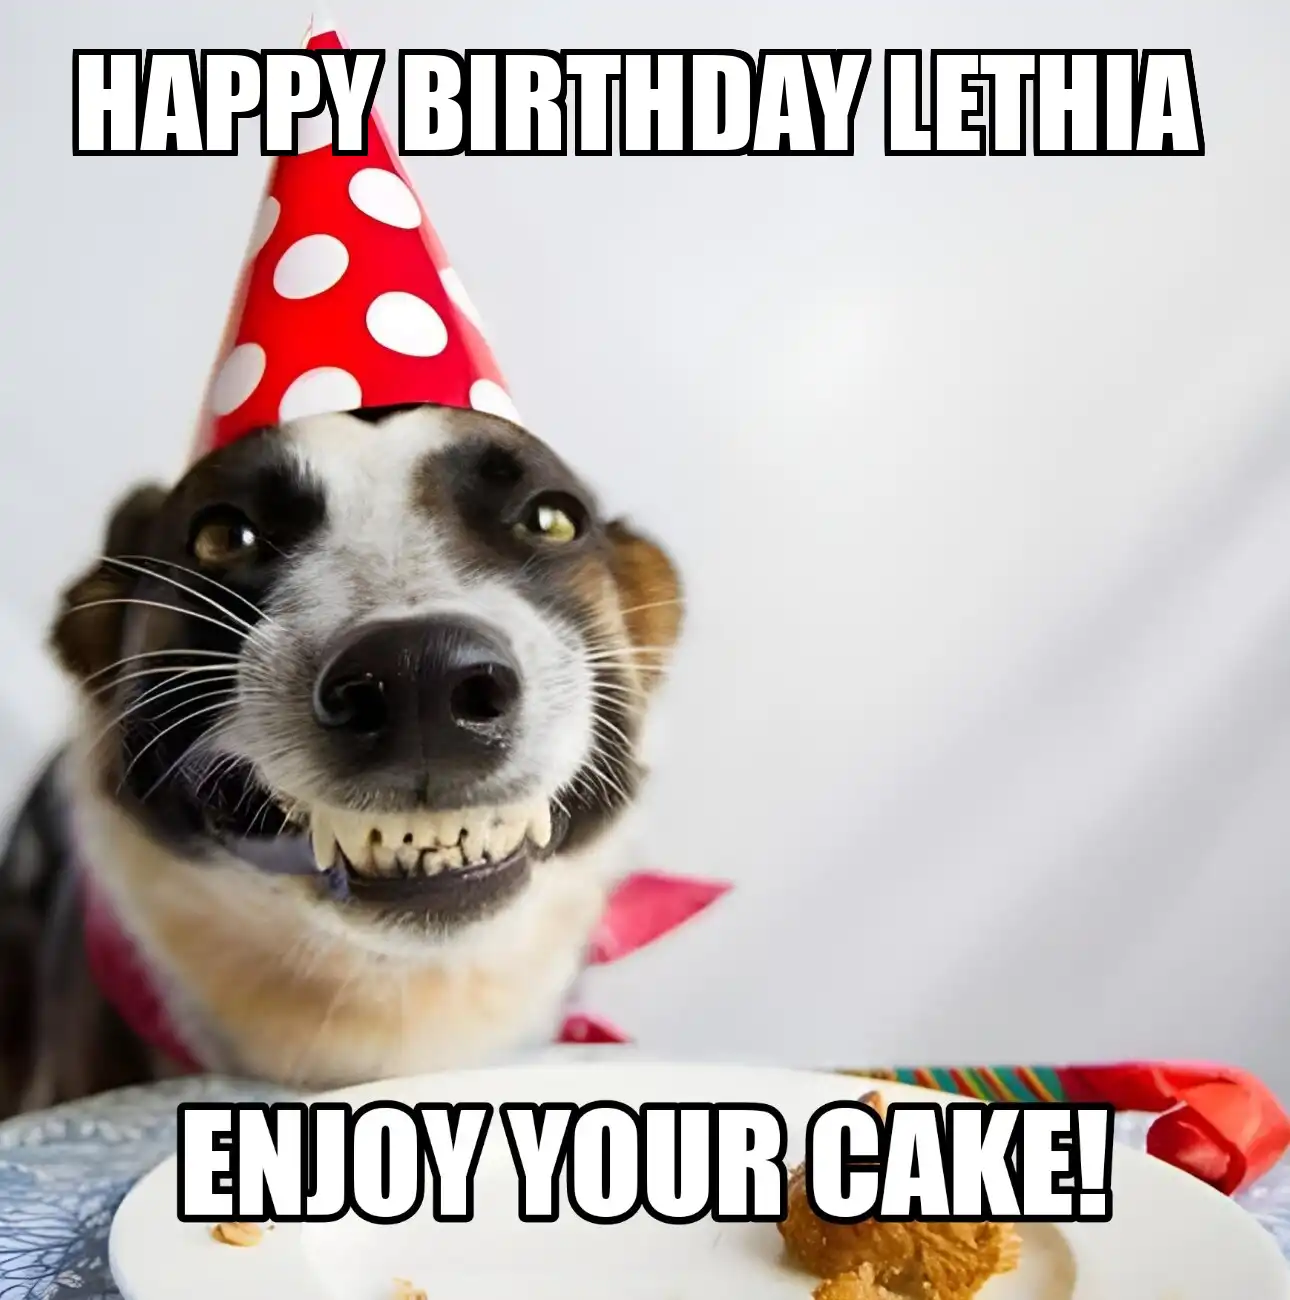 Happy Birthday Lethia Enjoy Your Cake Dog Meme